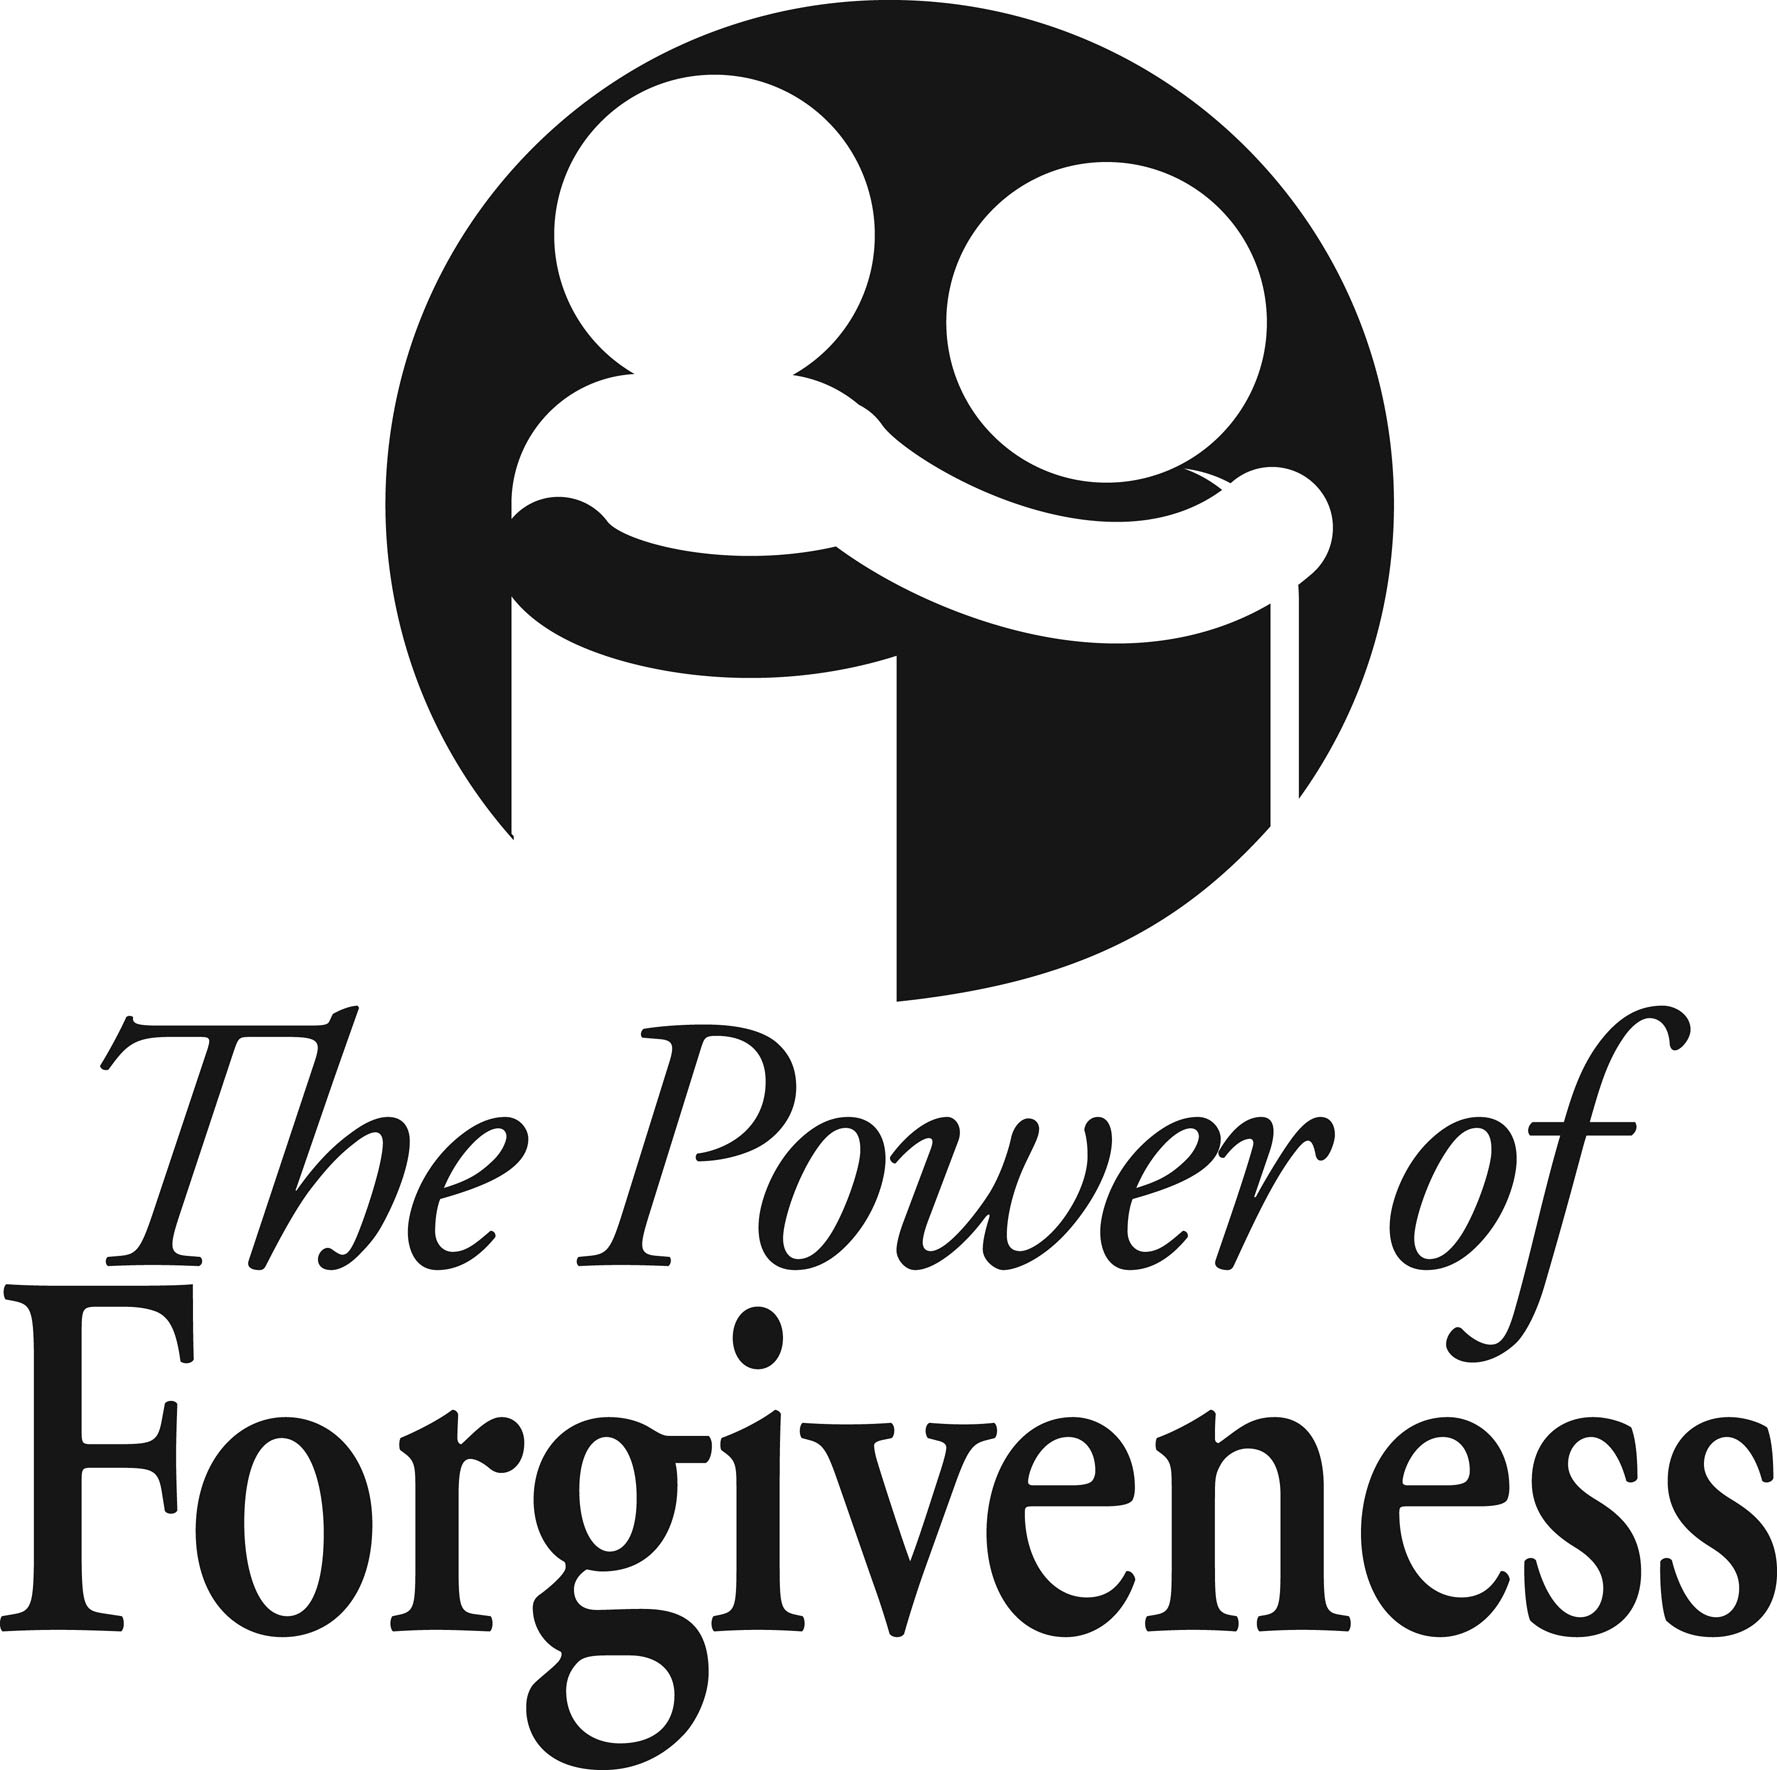 Forgiveness | Barbara's Banter